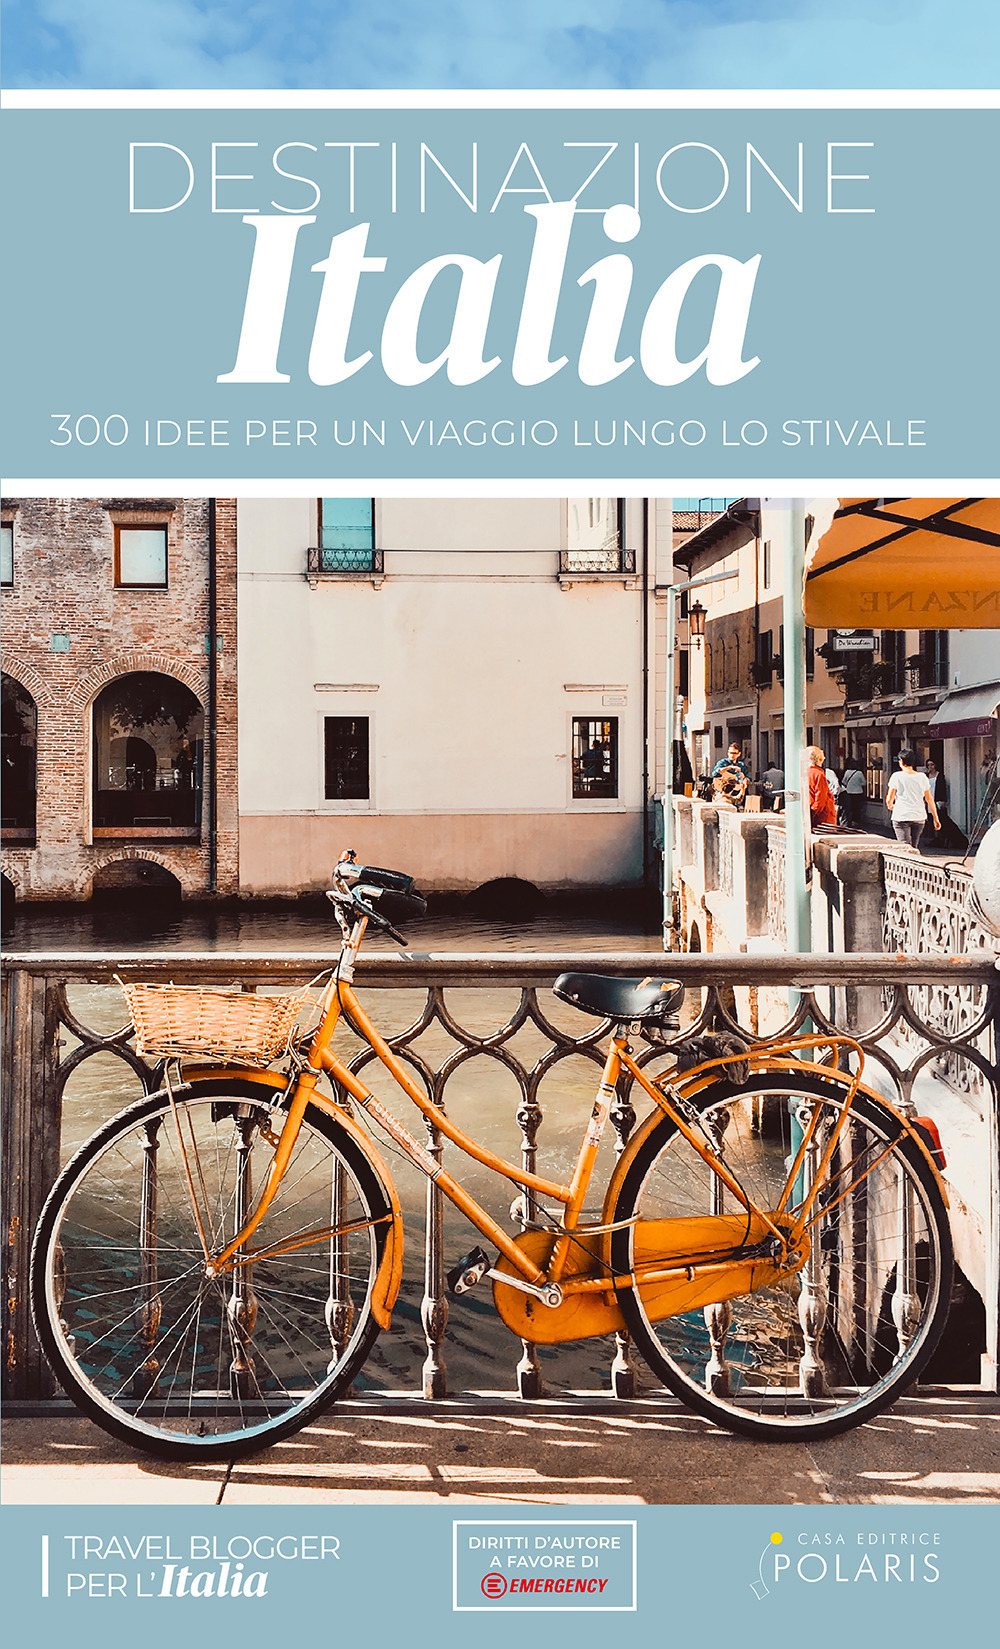 Libri Travel blogger per l'Italia - Destinazione Italia. 300 Idee Per Un Viaggio Lungo Lo Stivale NUOVO SIGILLATO, EDIZIONE DEL 18/11/2020 SUBITO DISPONIBILE